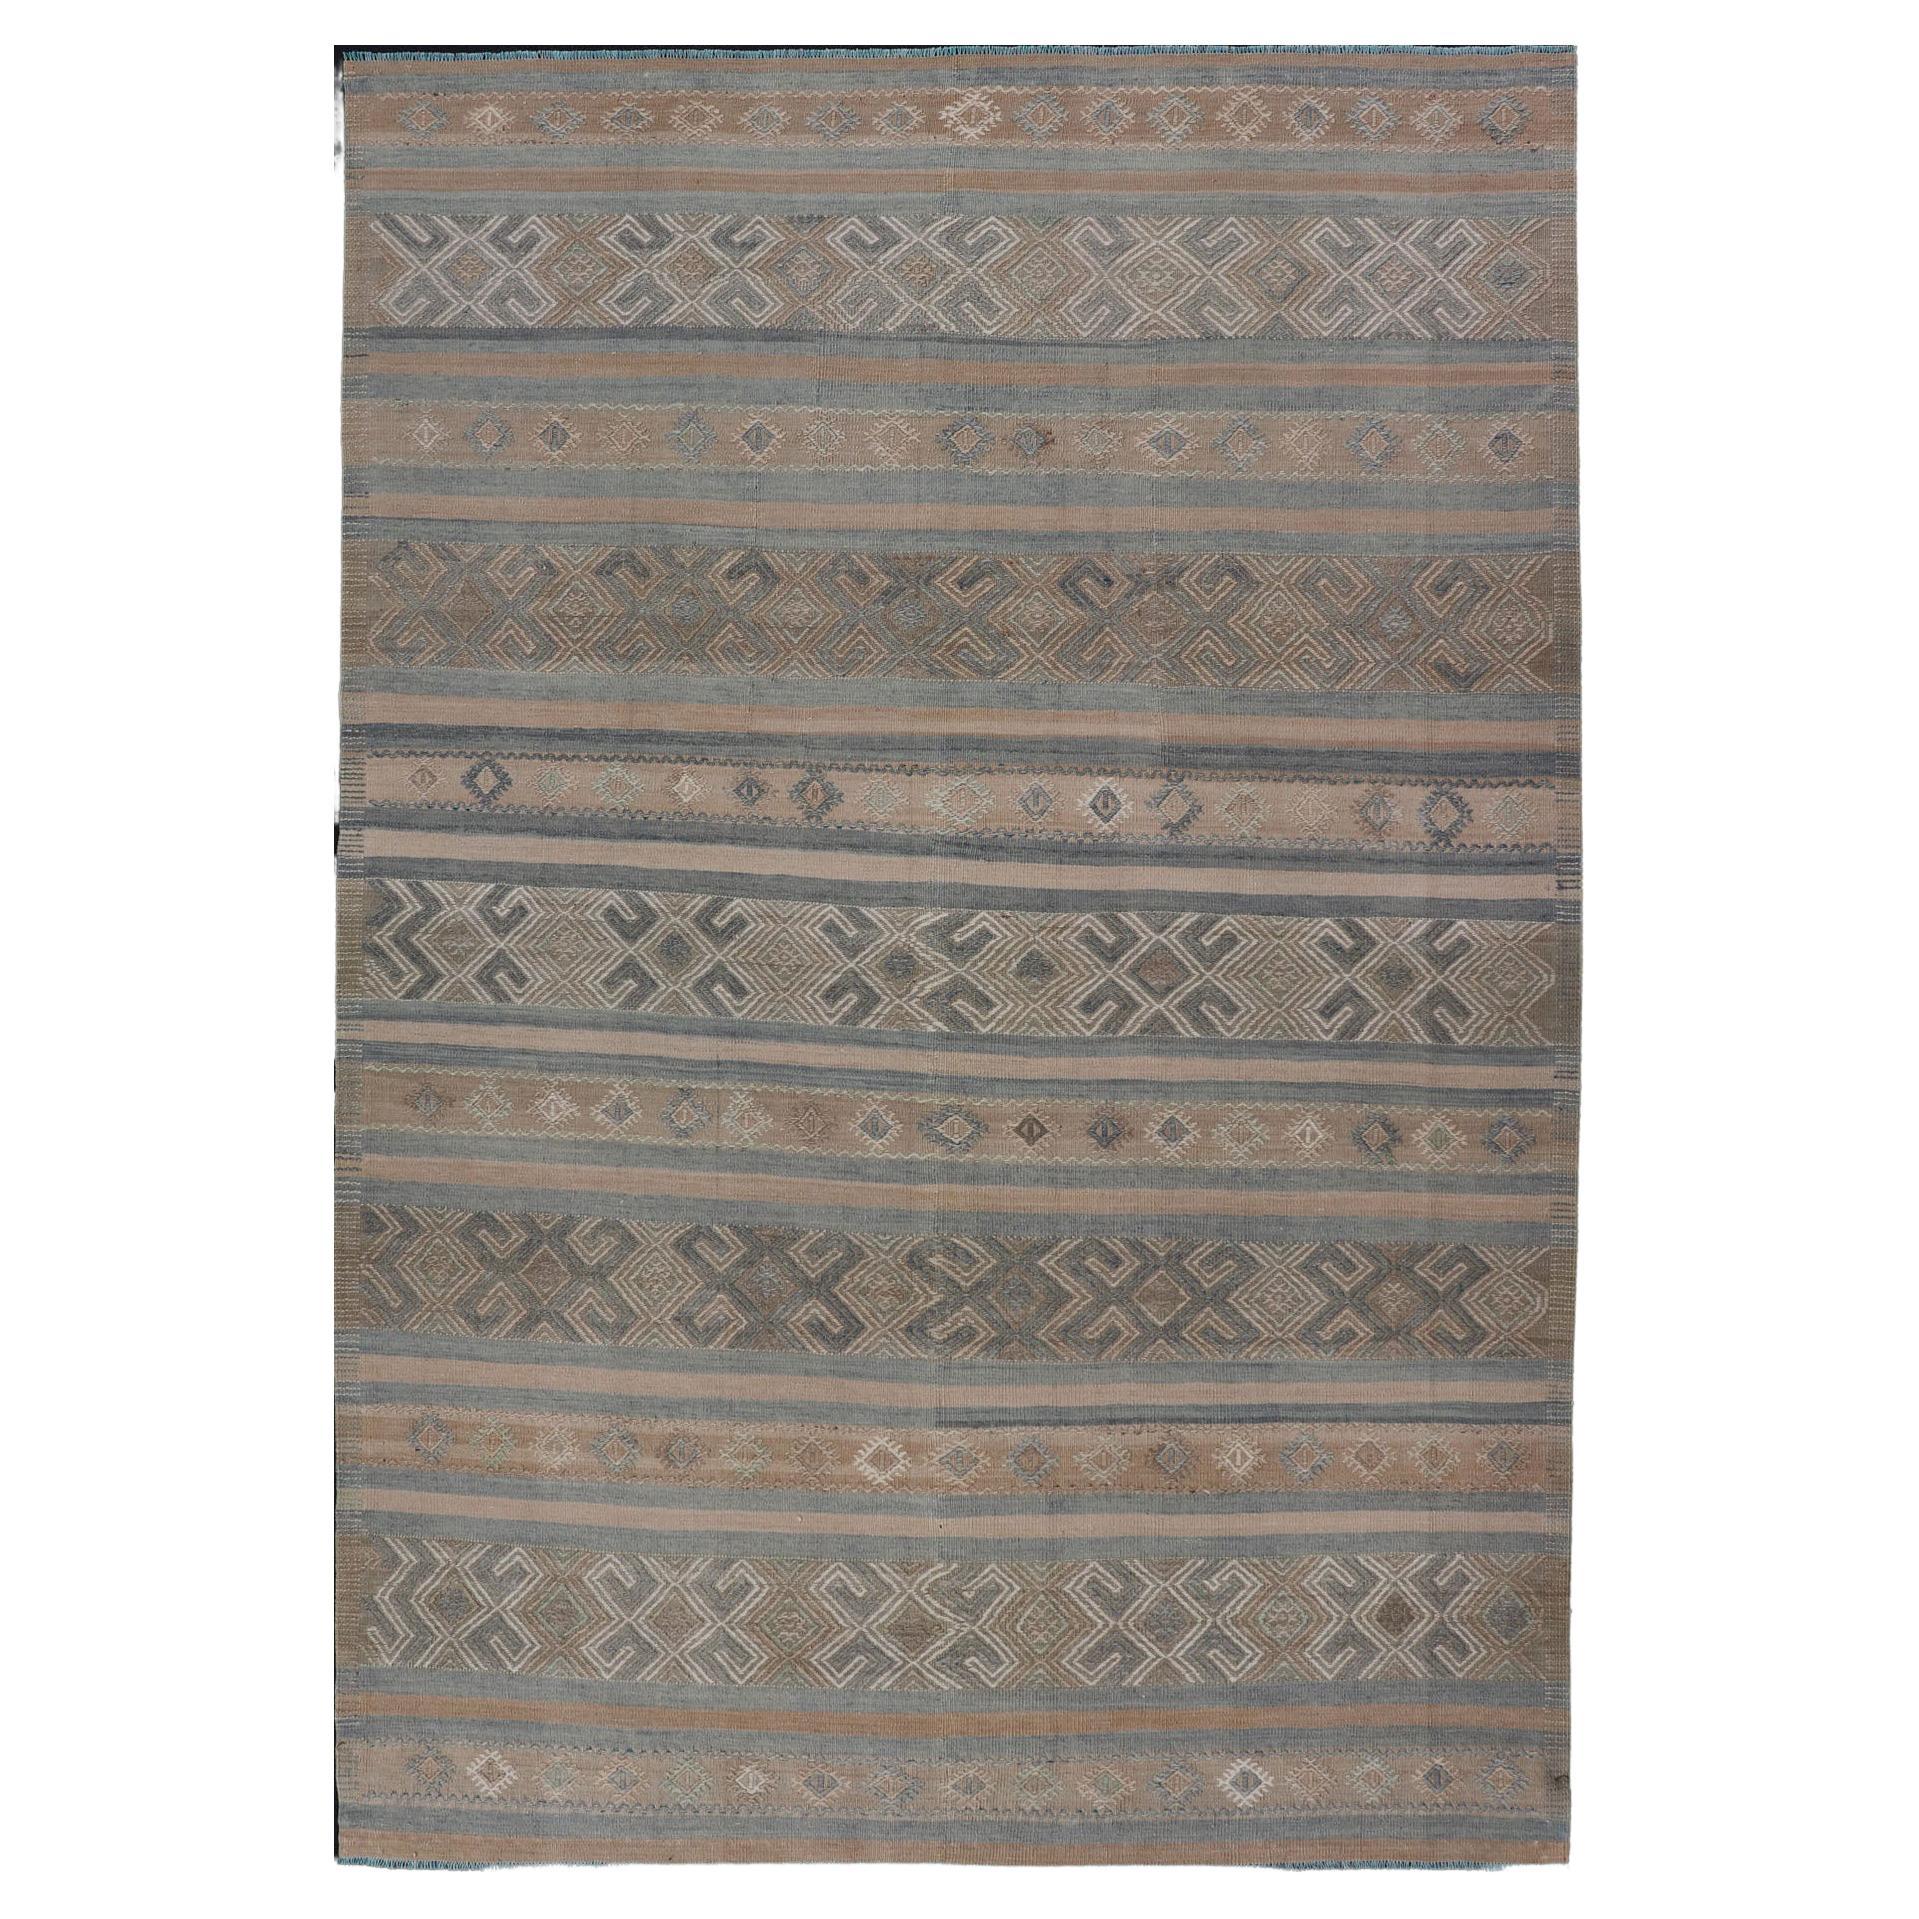 Türkischer Kelim-Teppich mit horizontalen Streifen in Taupe und neutralen Farben